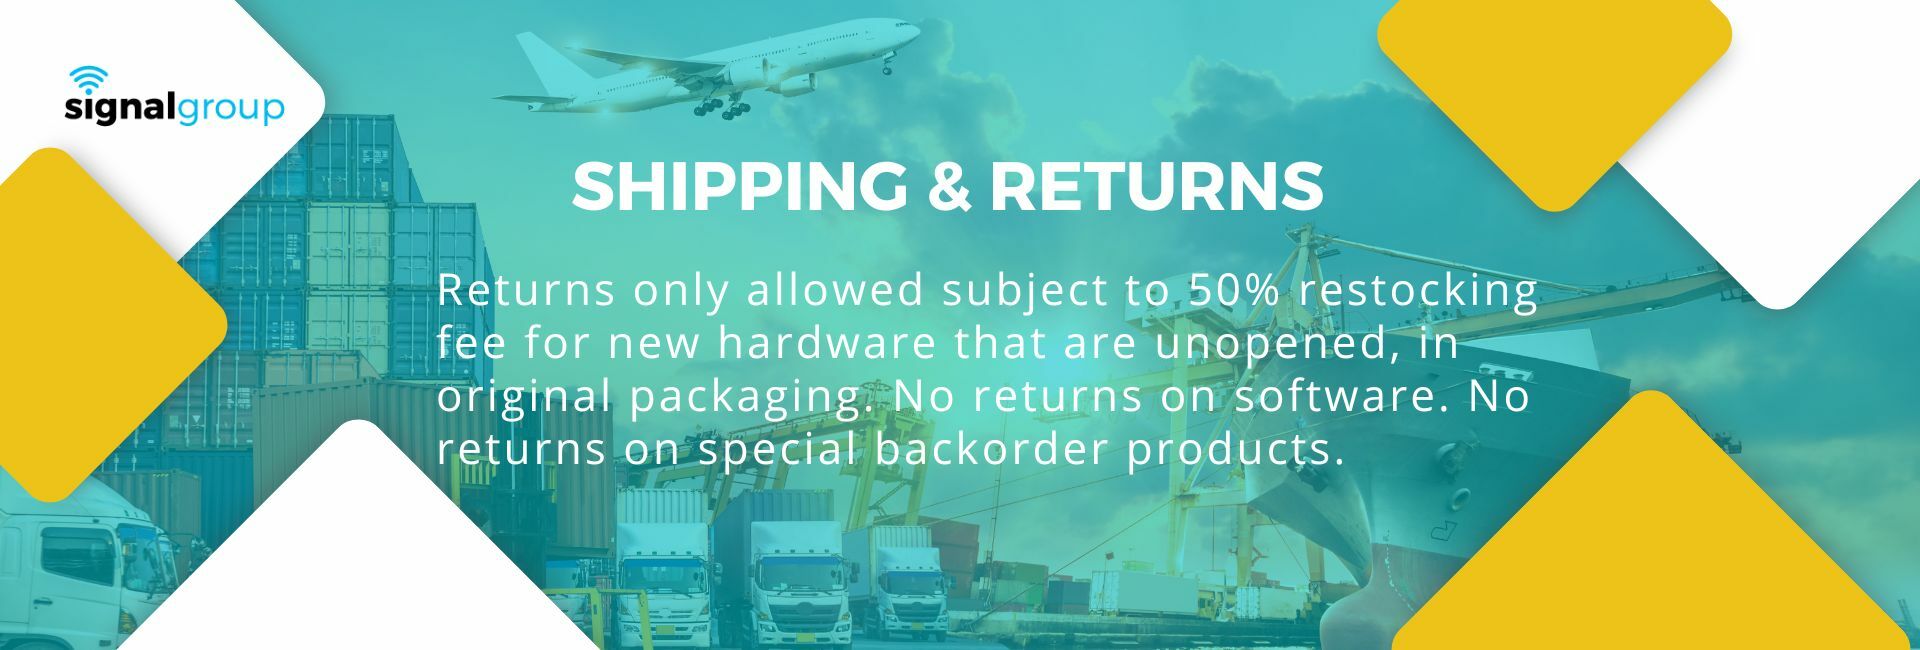 shipping-returns.jpg